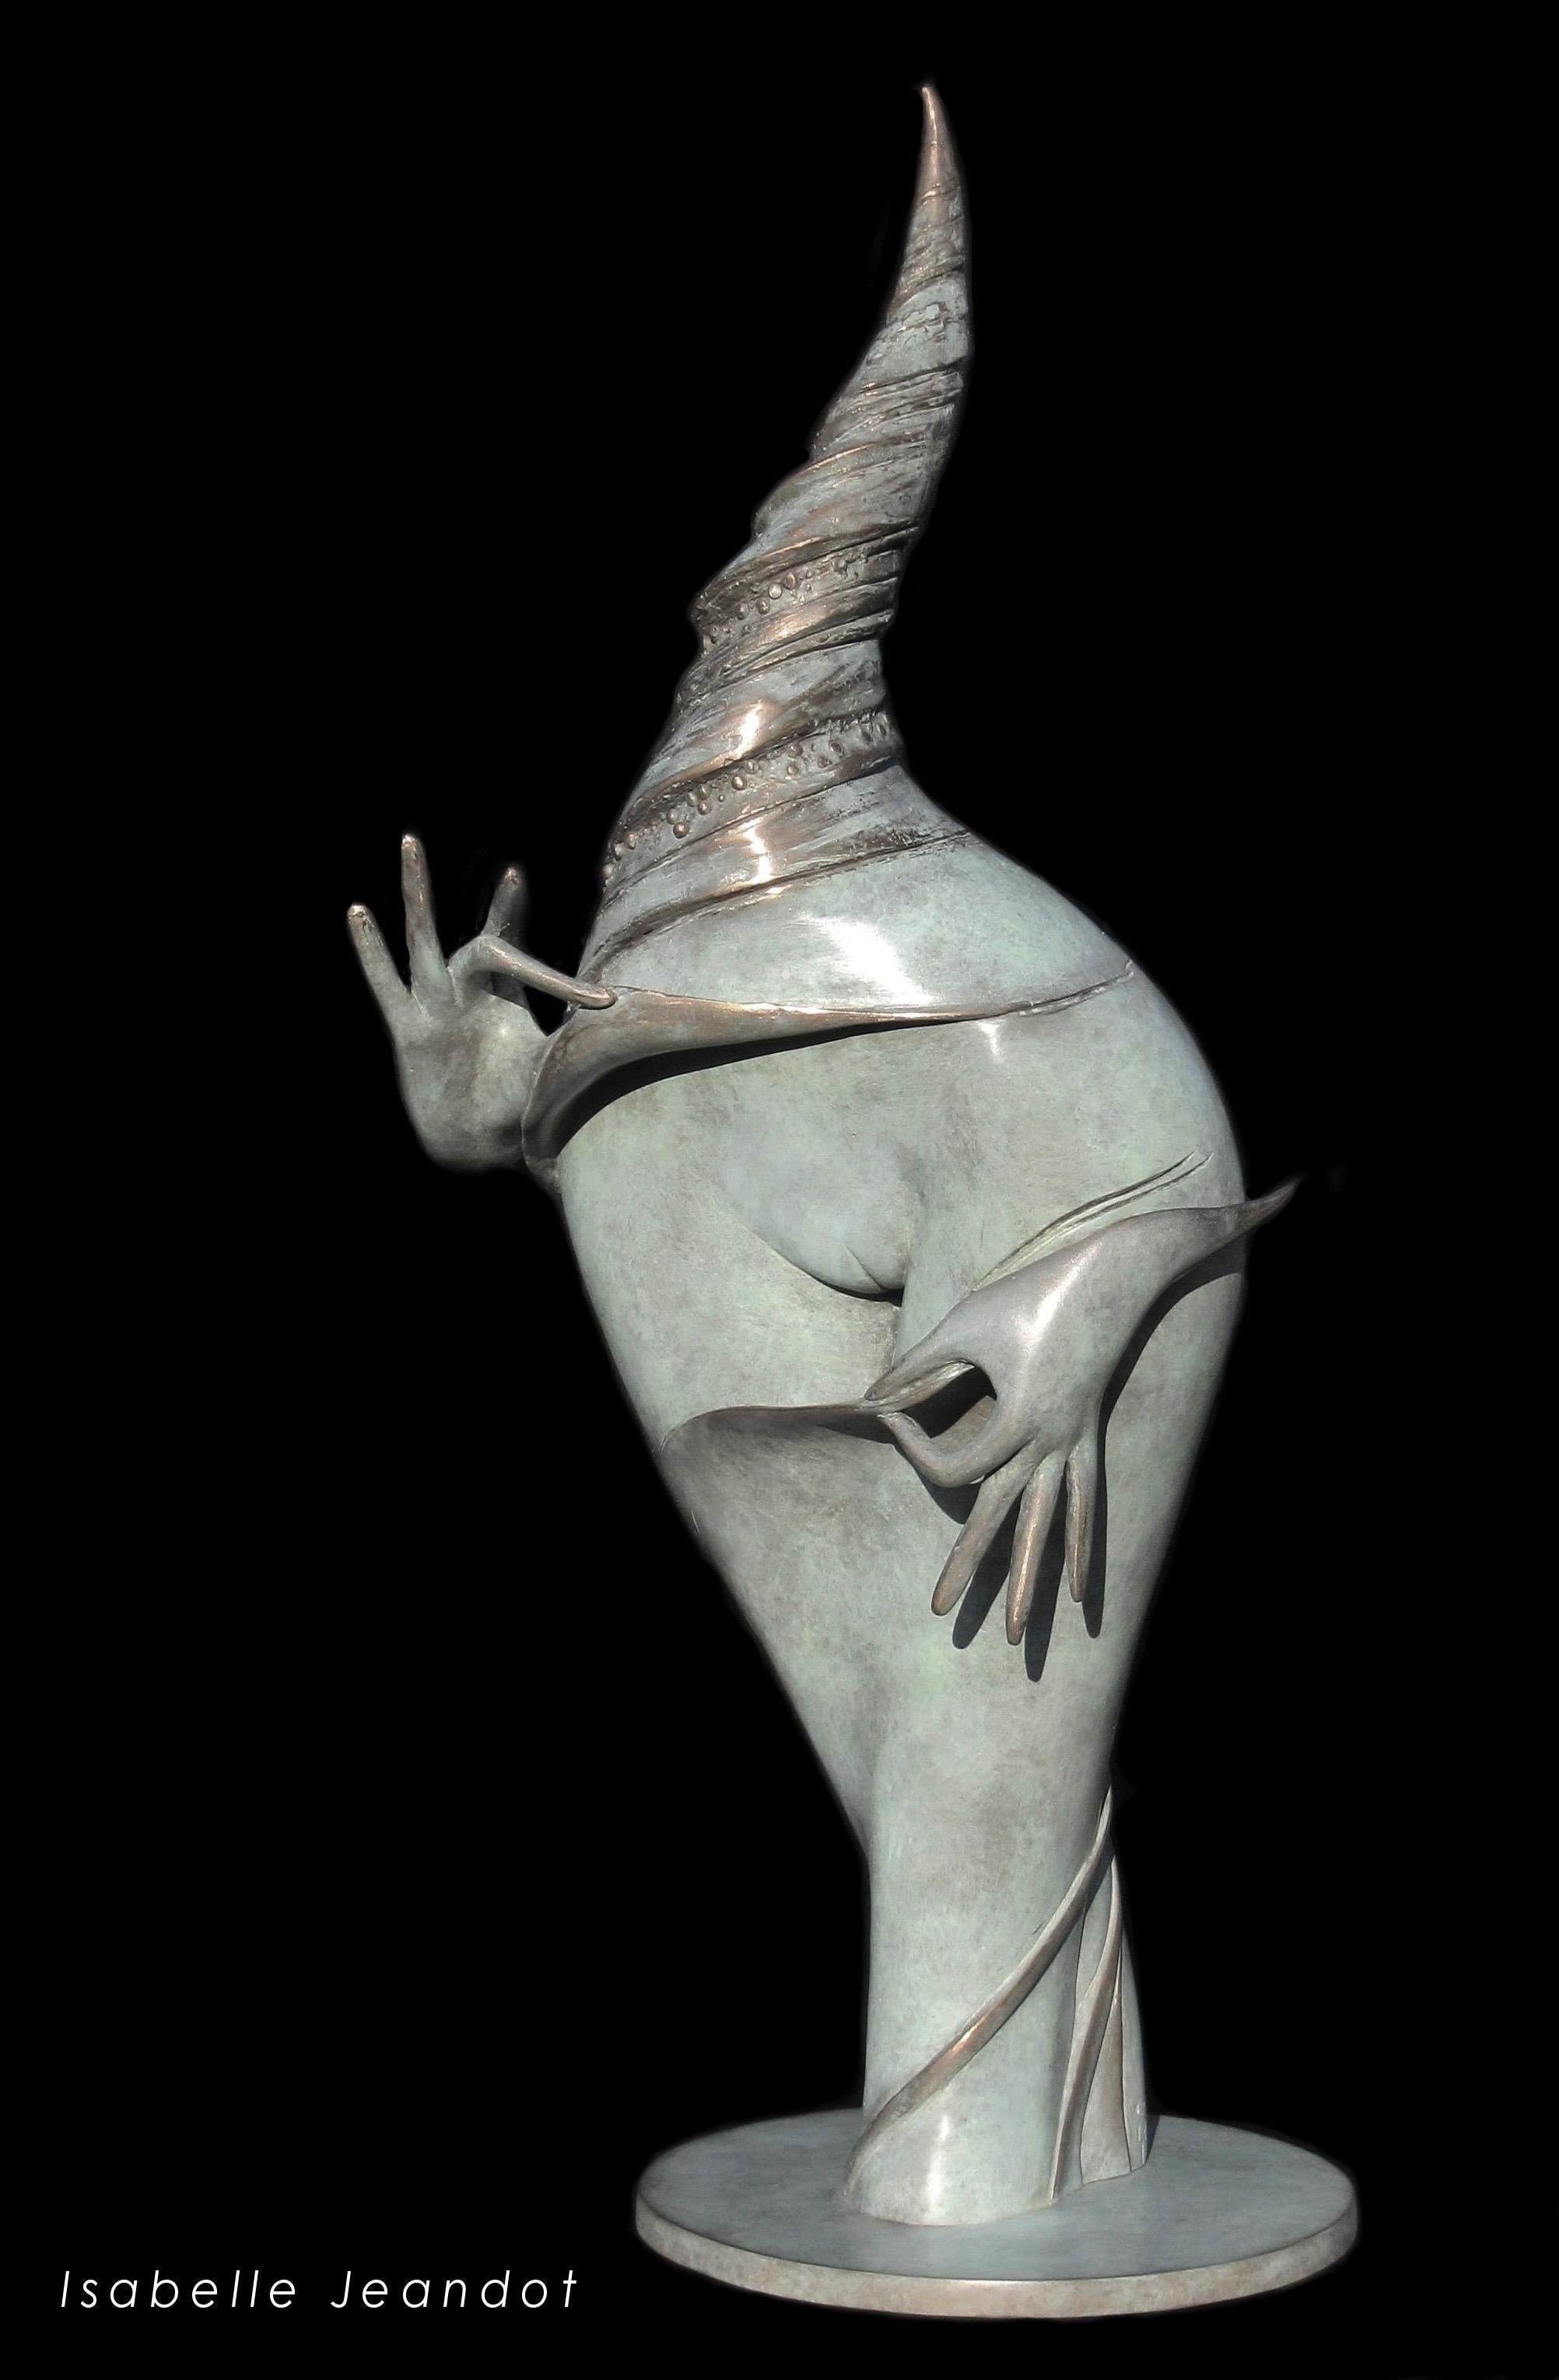 Isabelle Jeandot Nude Sculpture - "The Jewel" ("Le Joyau"), Oneiric Figurative Sensual Nude Bronze Sculpture